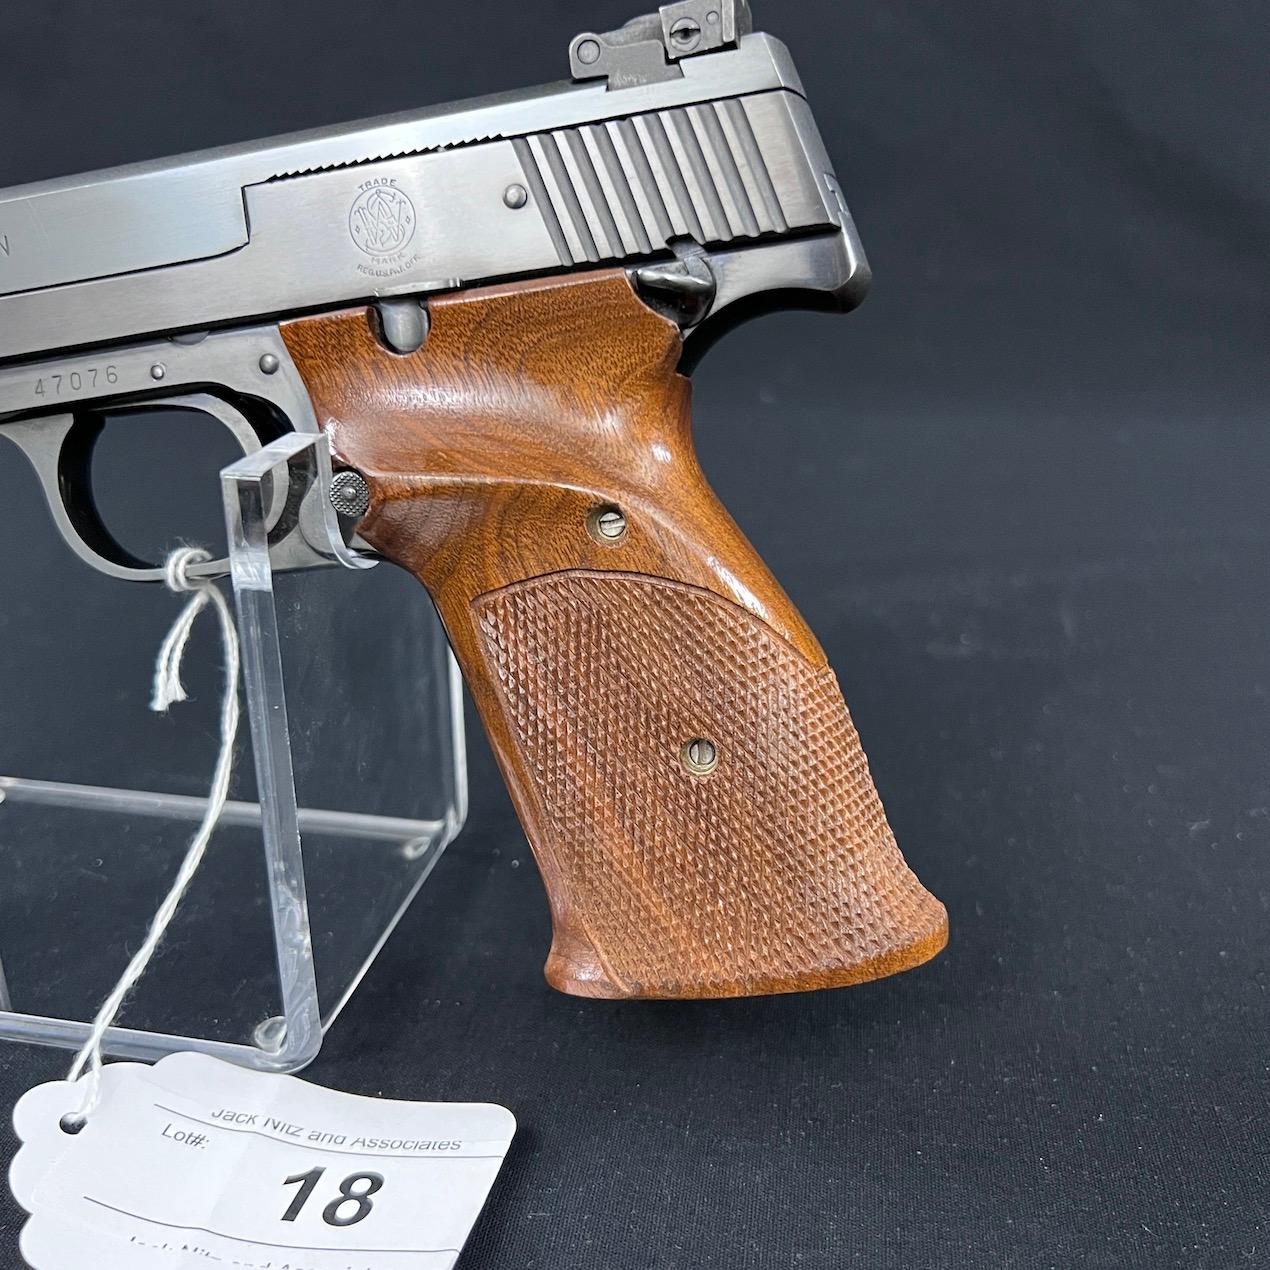 Smith & Wesson Model 41 Semi Auto Pistol